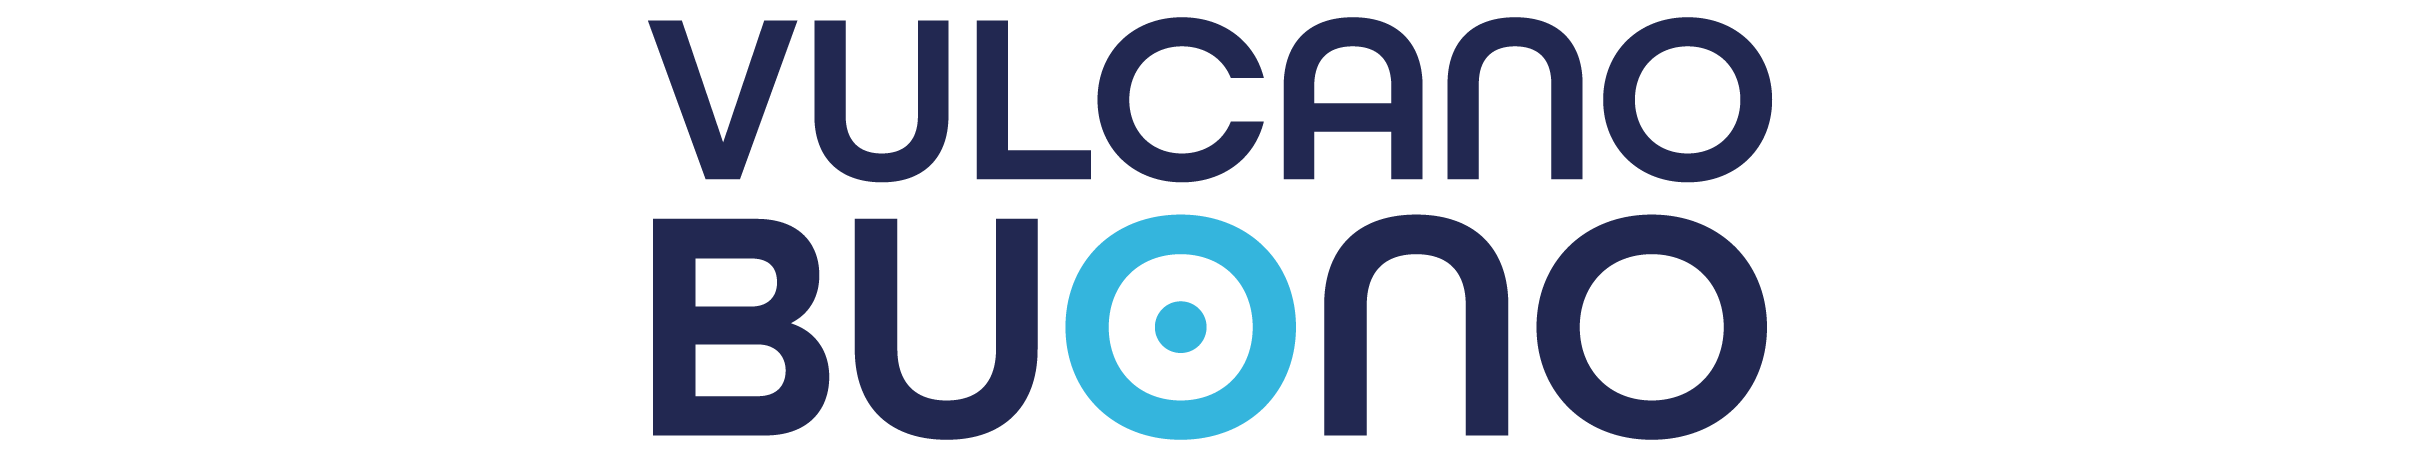 Vulcano Buono Logo